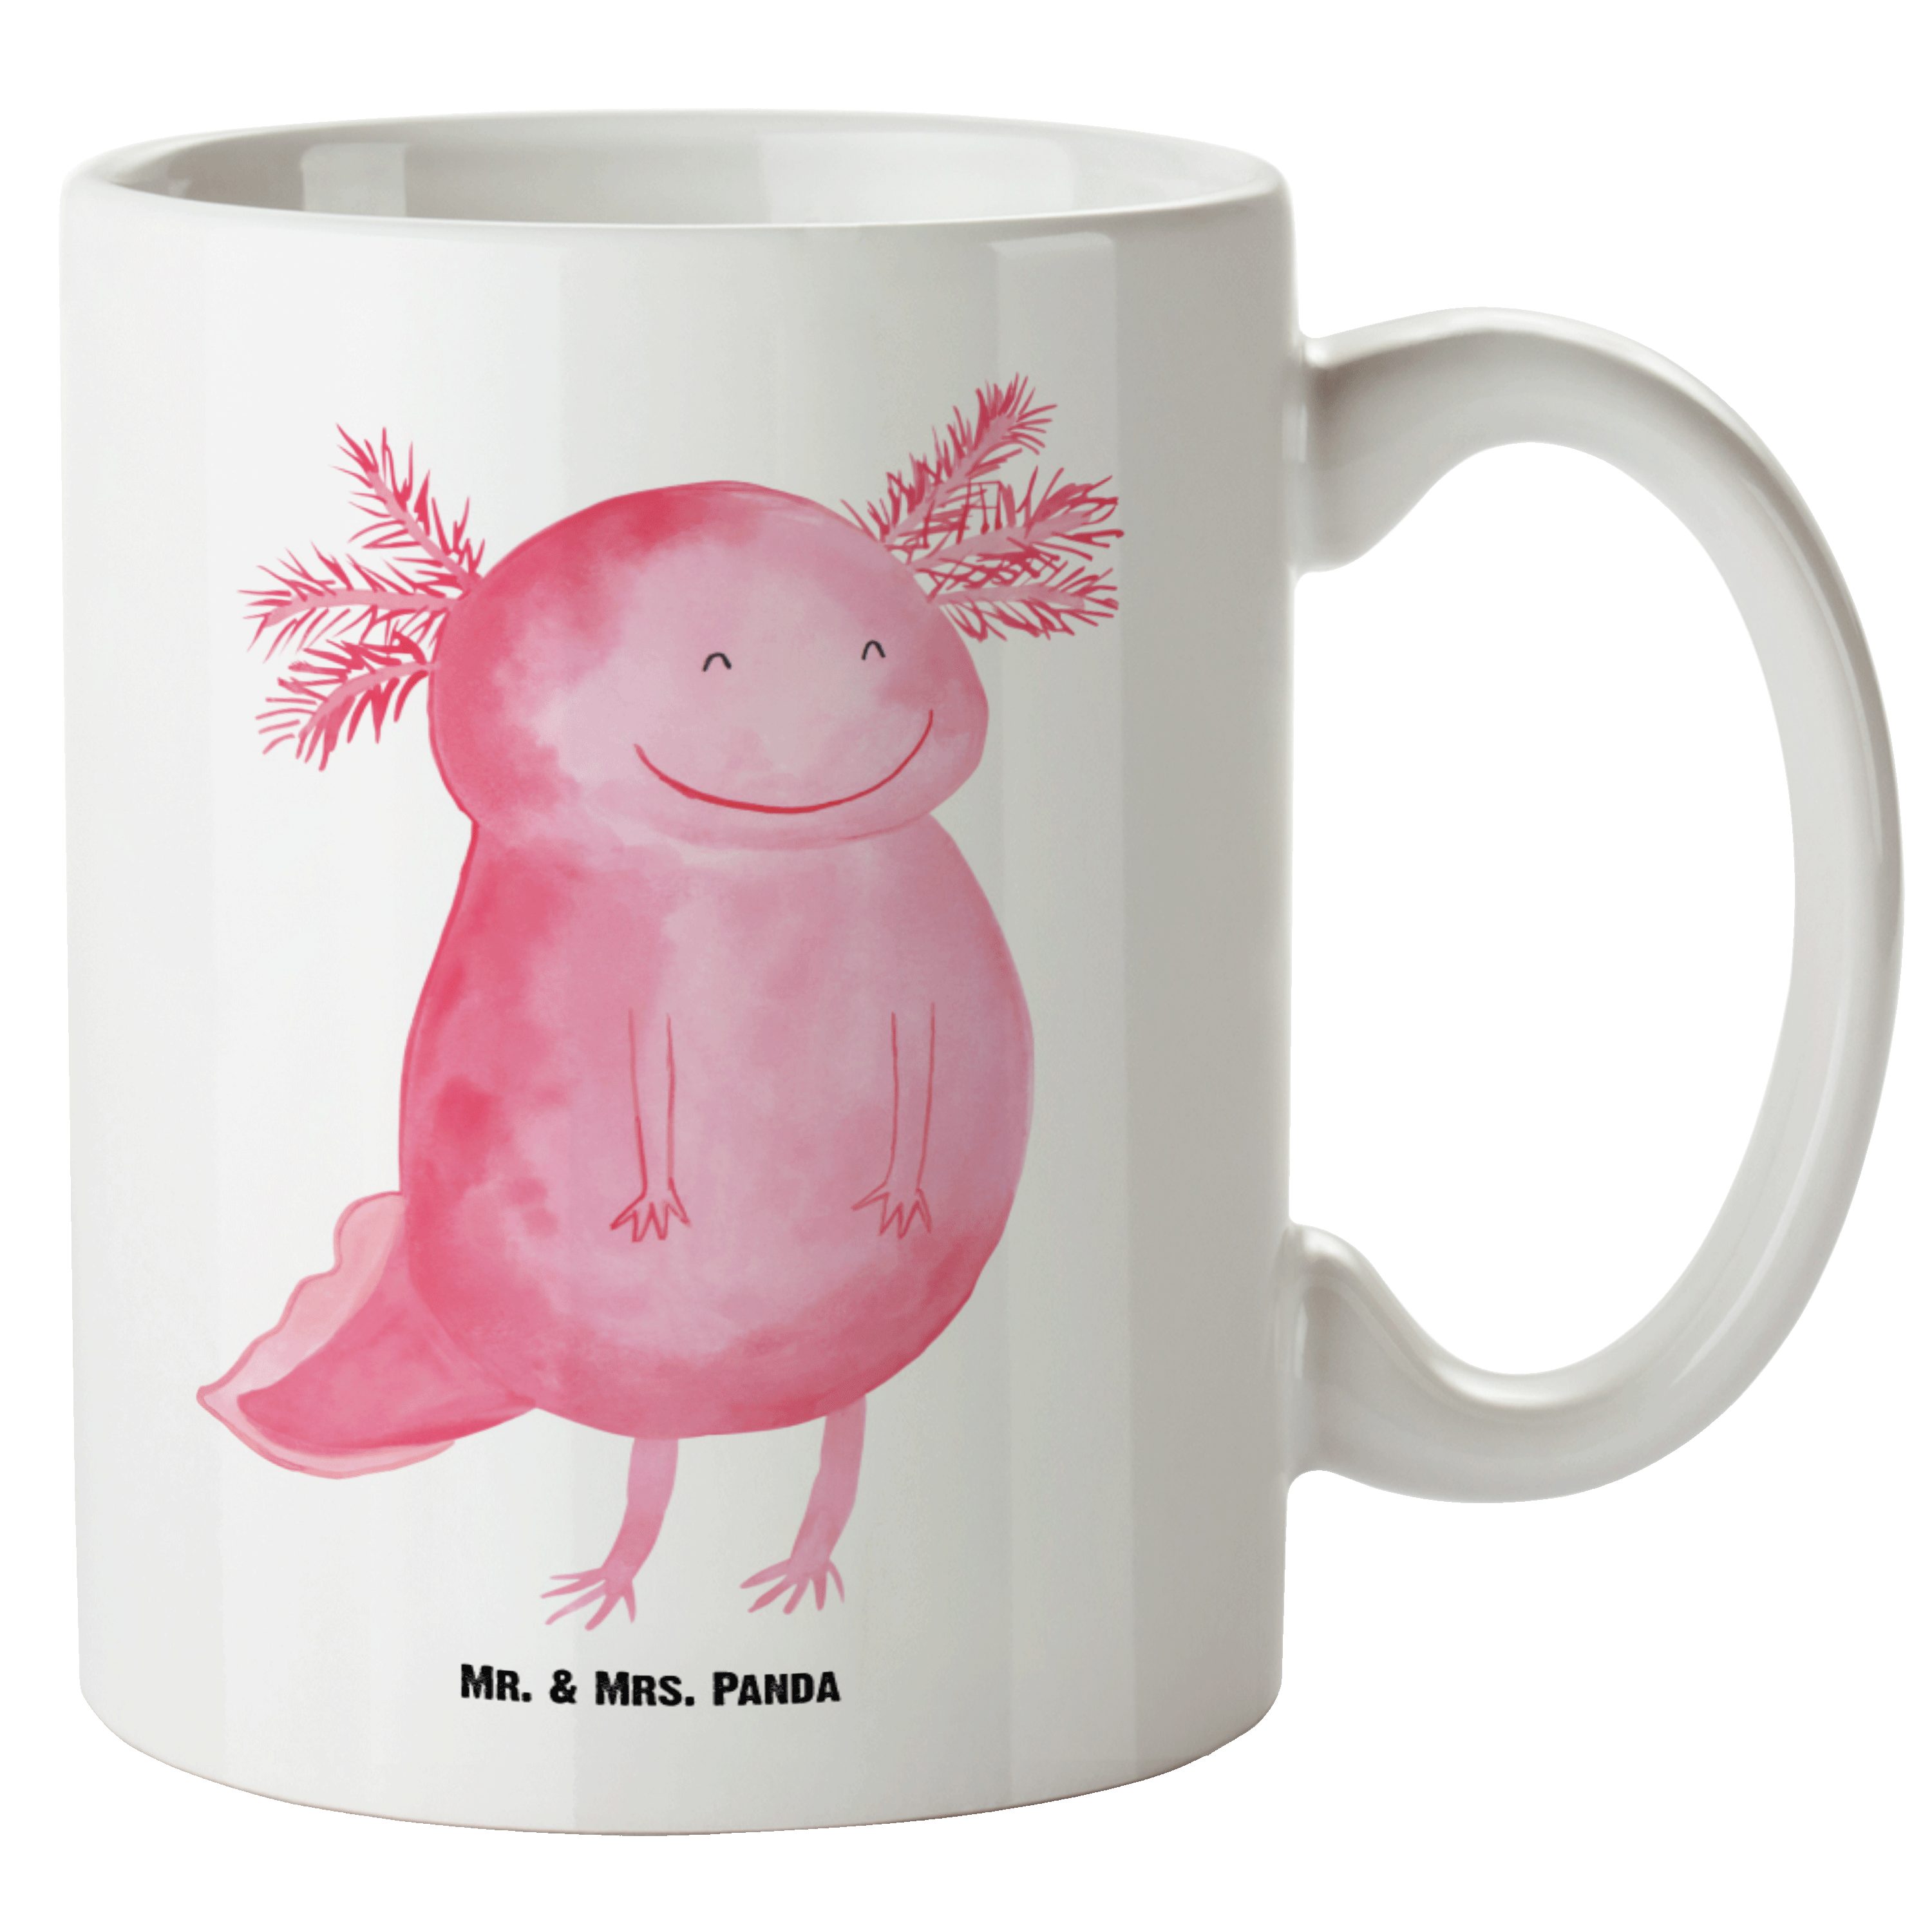 Mr. & Mrs. Panda Tasse Axolotl glücklich - Weiß - Geschenk, gute Laune, Molch, Groß, Große T, XL Tasse Keramik